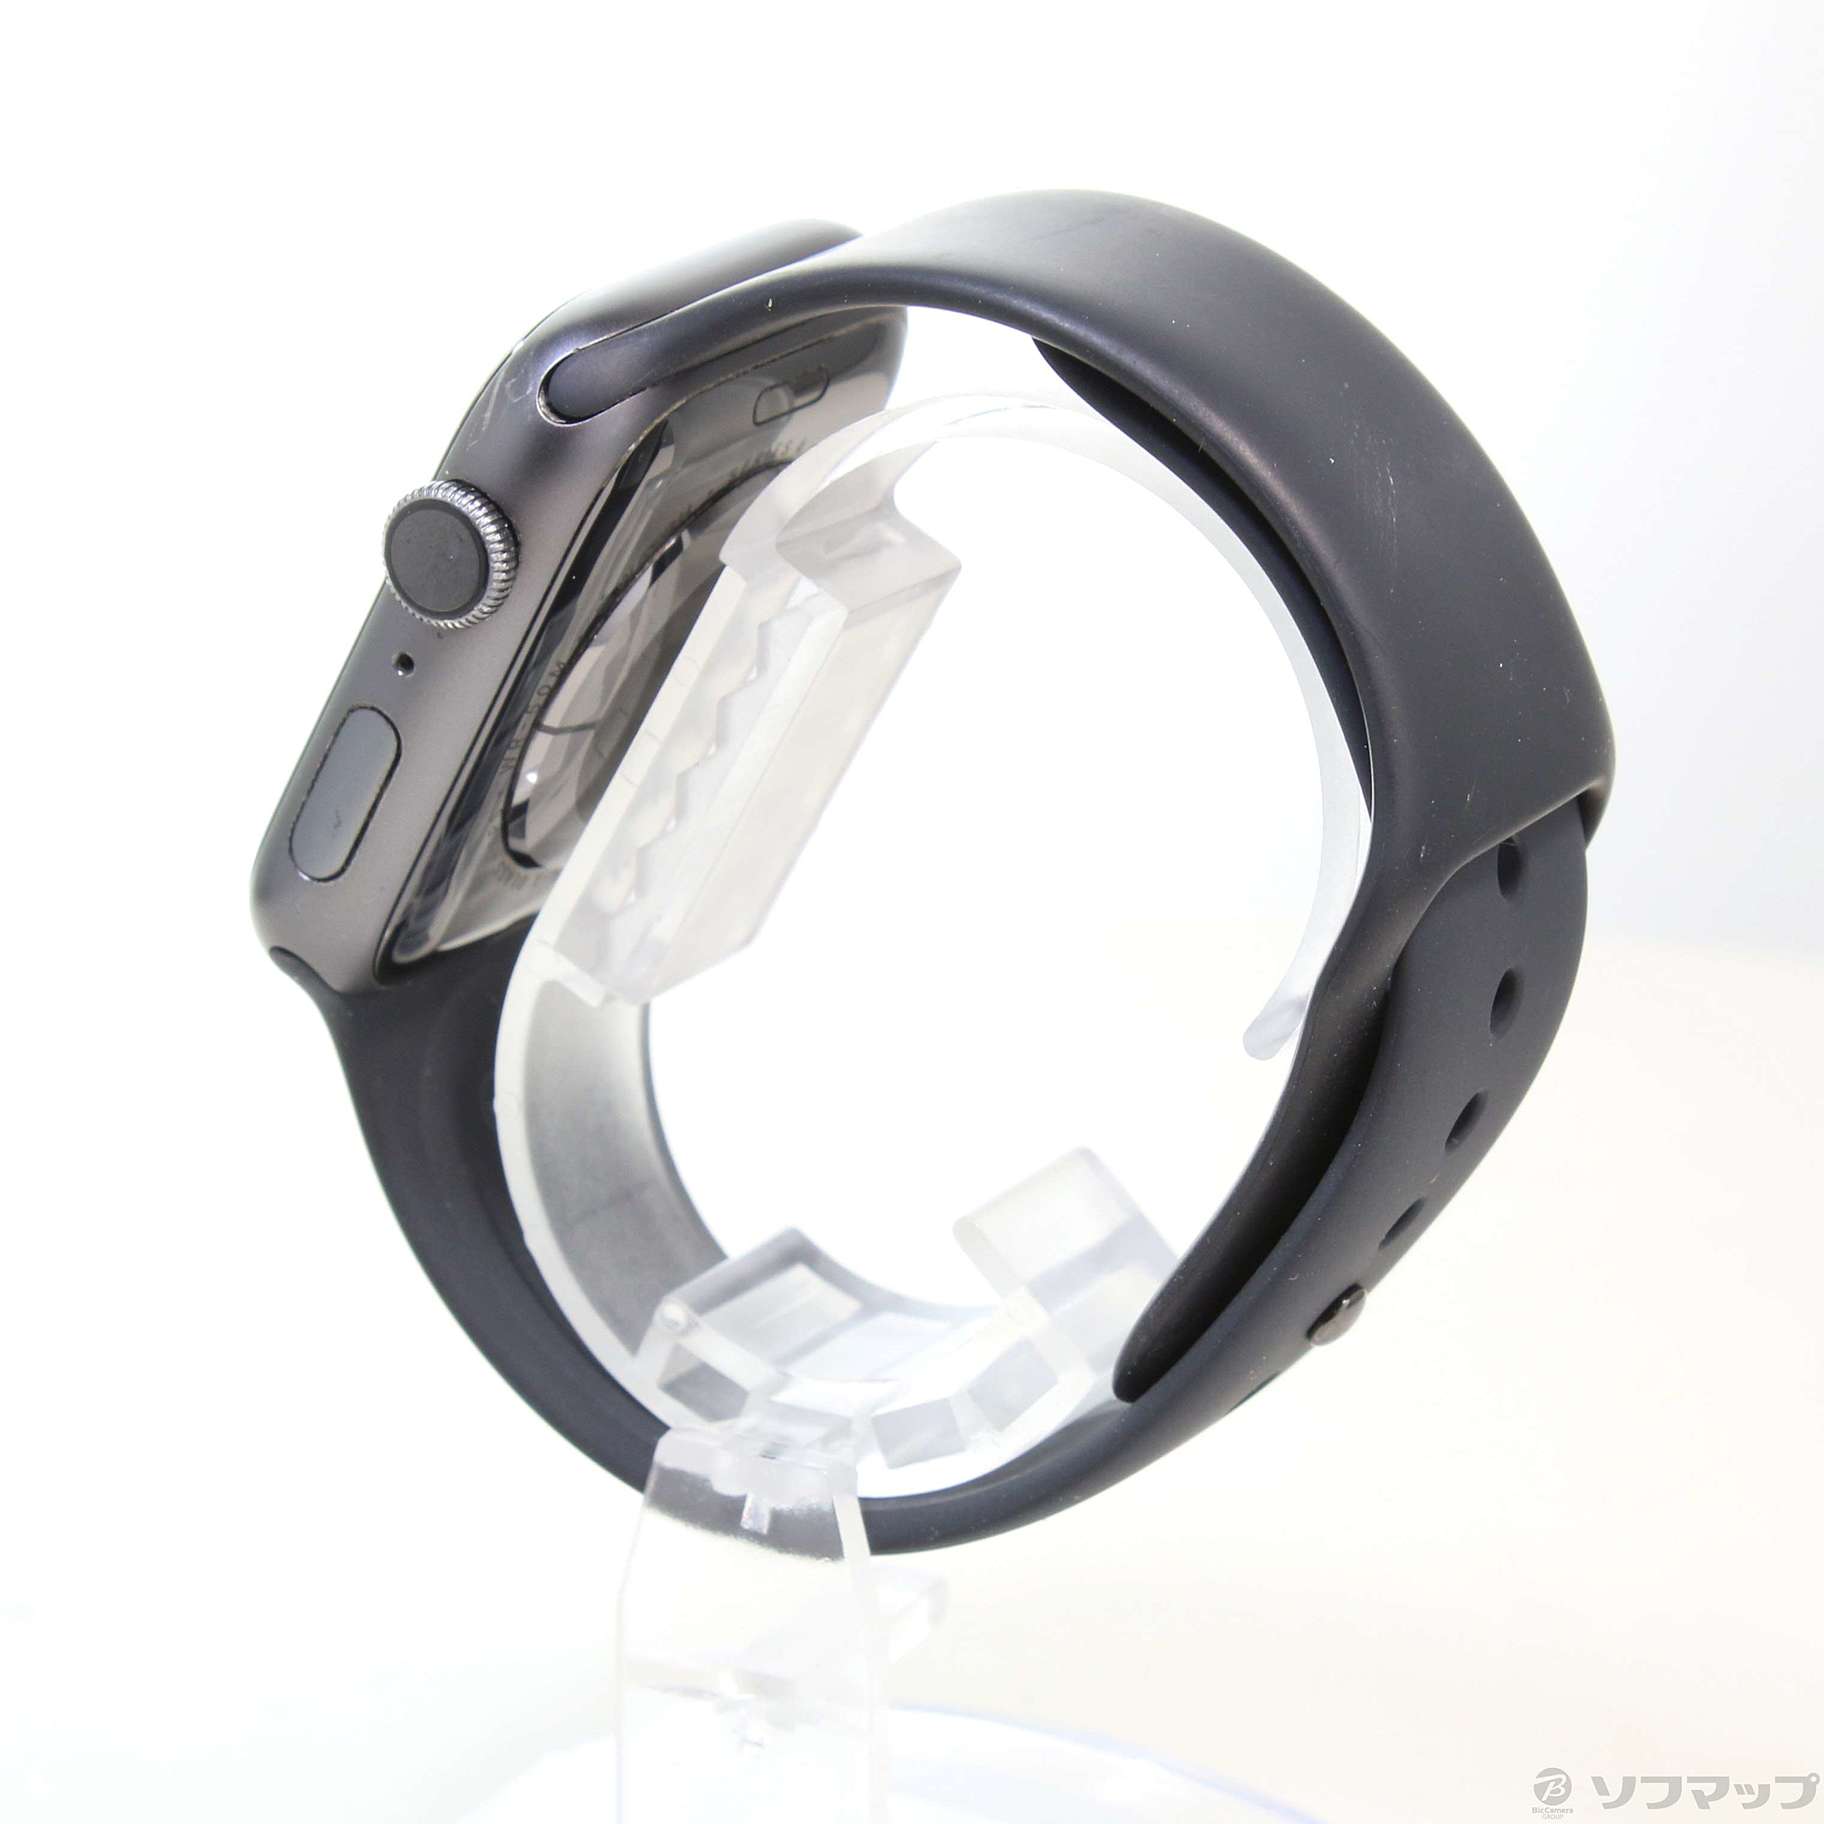 中古】Apple Watch Series 4 GPS 44mm スペースグレイアルミニウム 